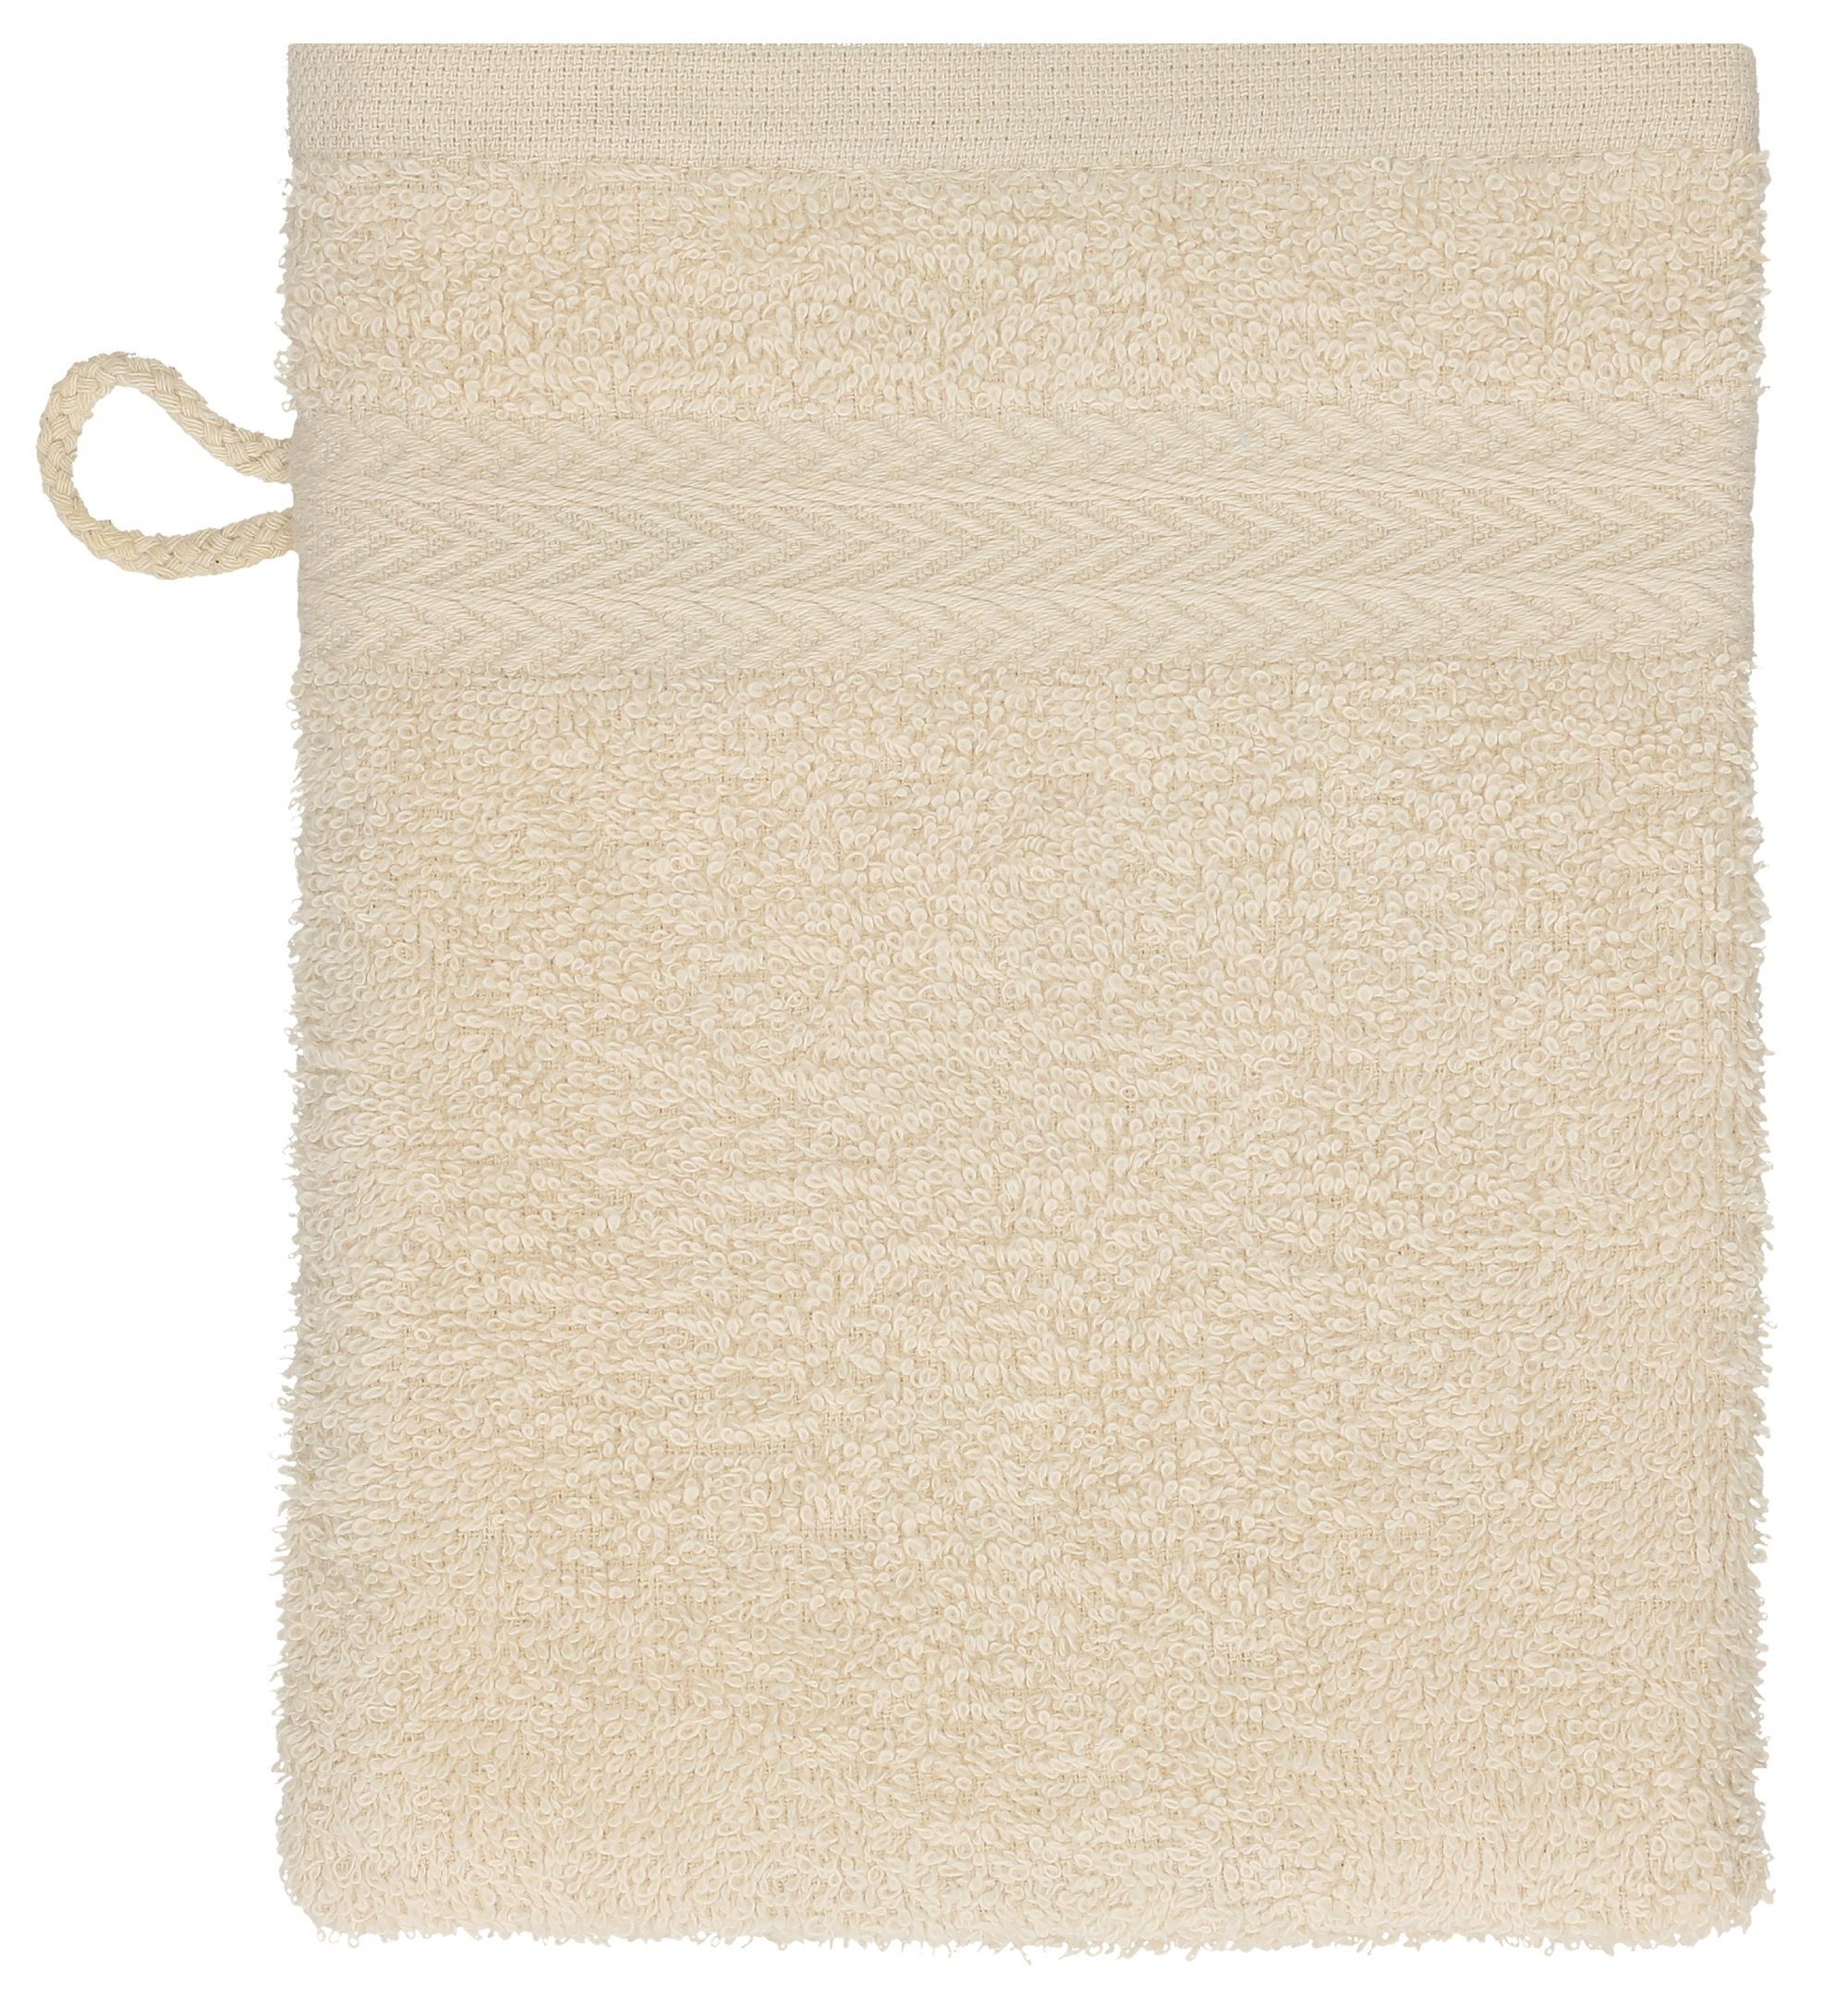 100% cm Betz - Premium 16x21 rubinrot Waschlappen 10 Sand Waschhandschuh Baumwolle Set Waschhandschuhe Farbe Stück